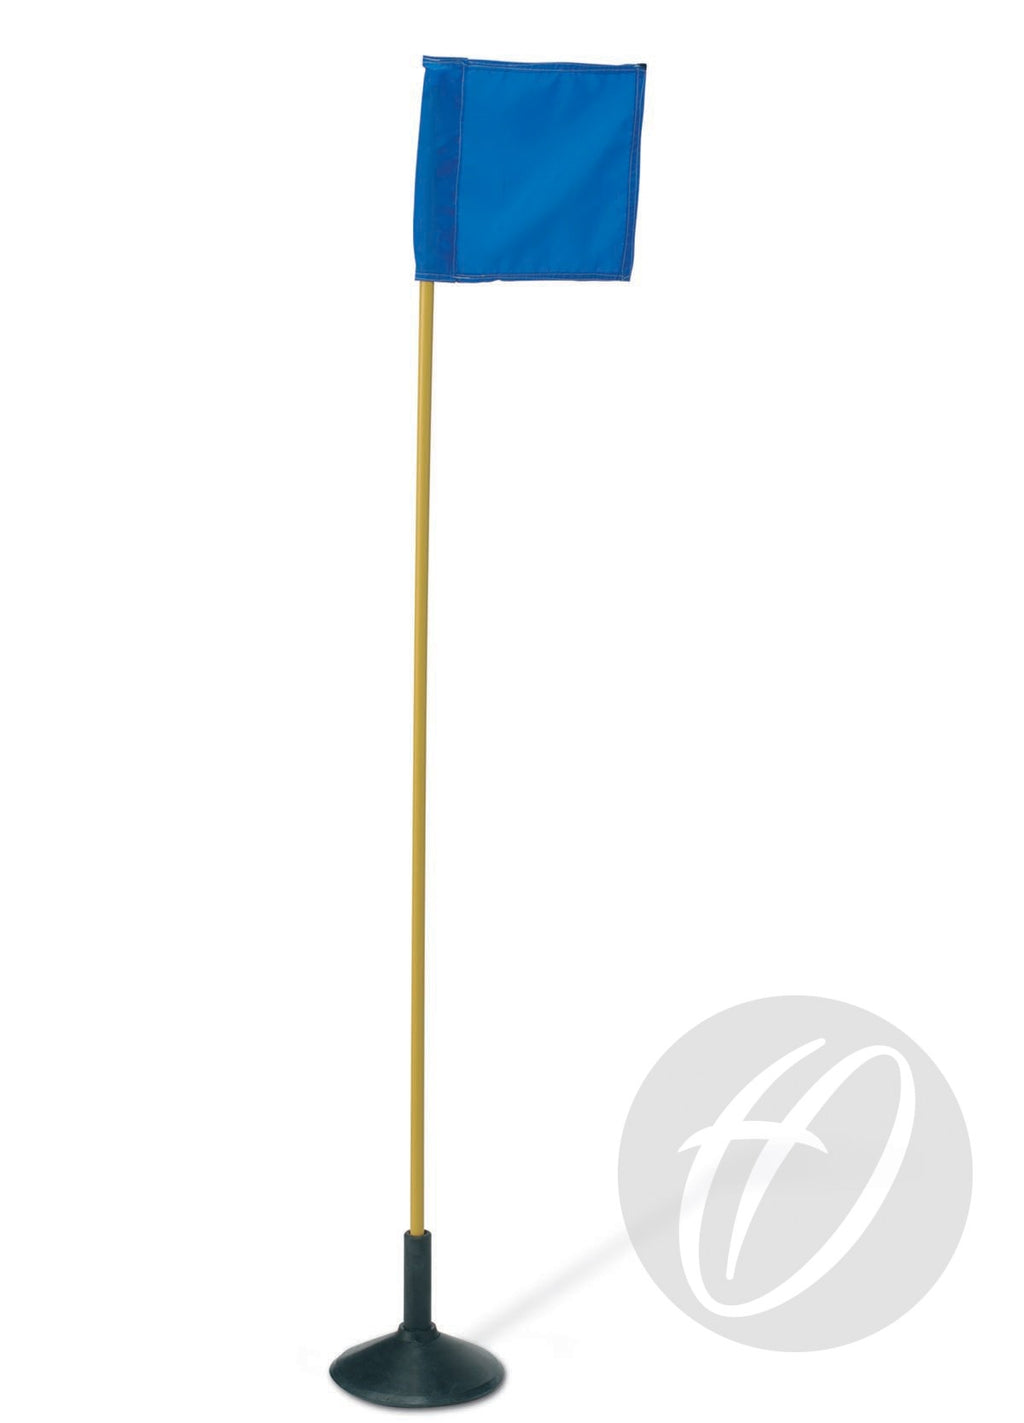 Flag Pole with Spike